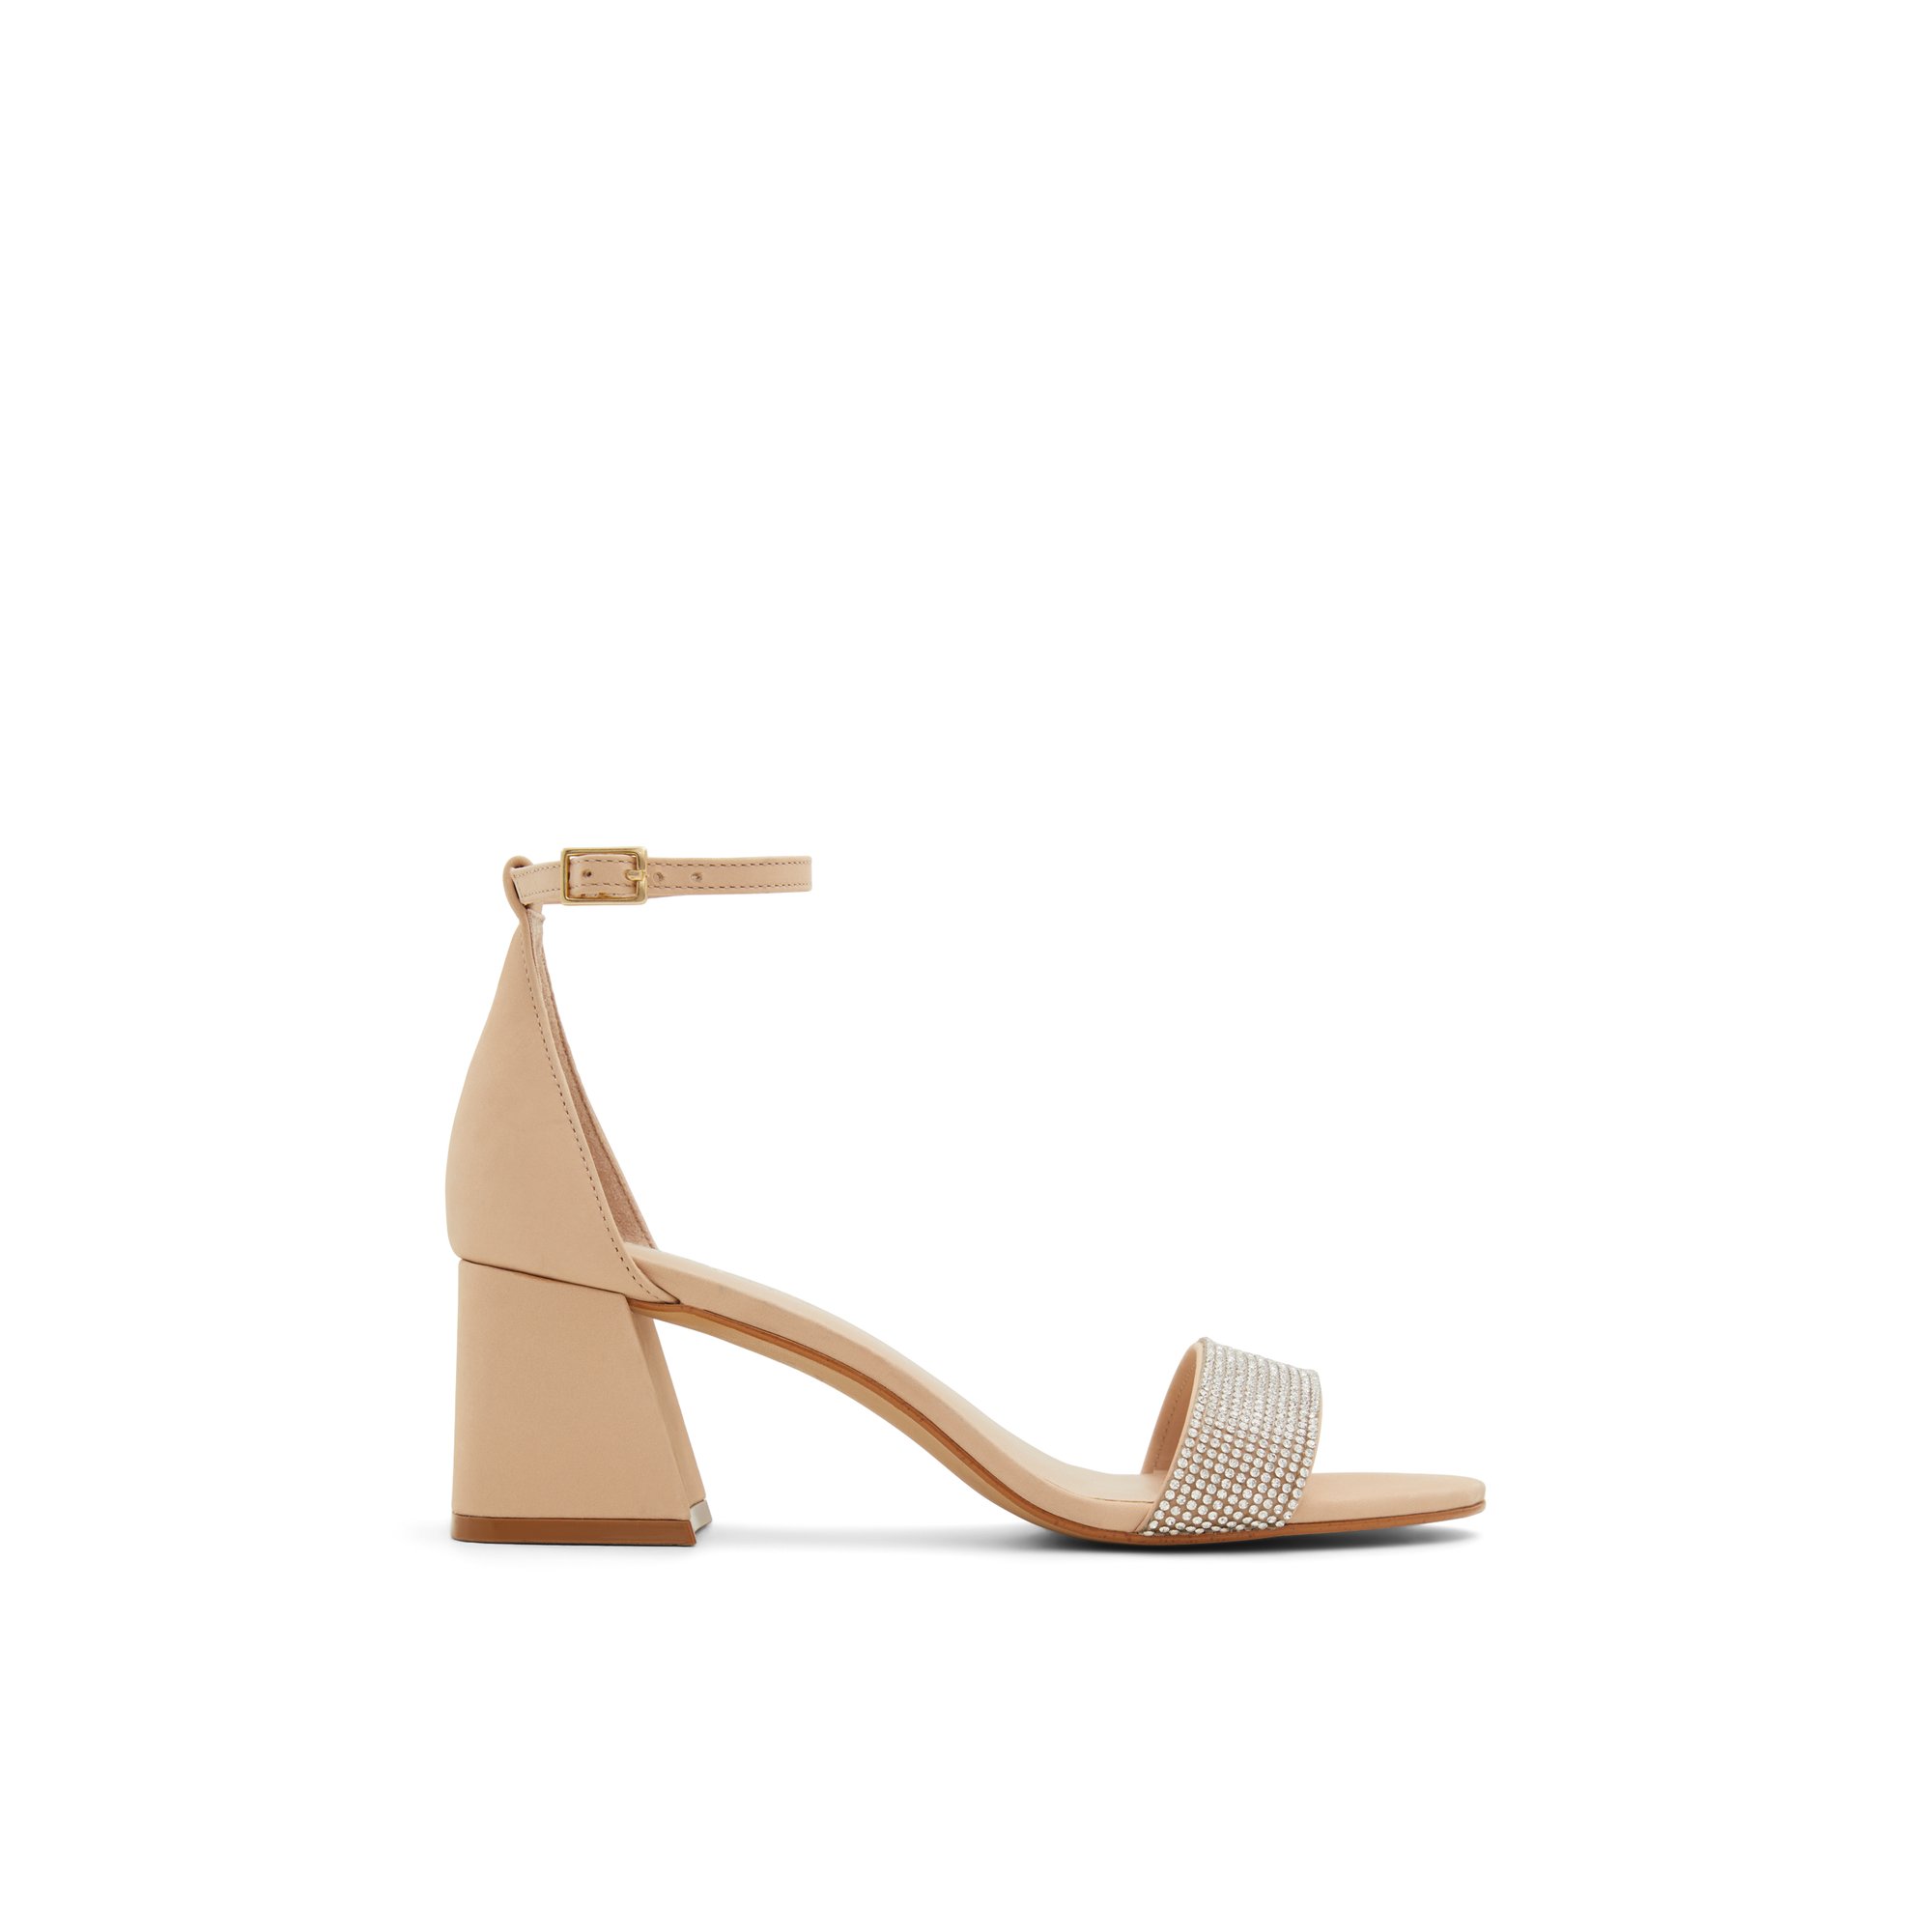 ALDO Formigoni - Women's Sandal - Beige